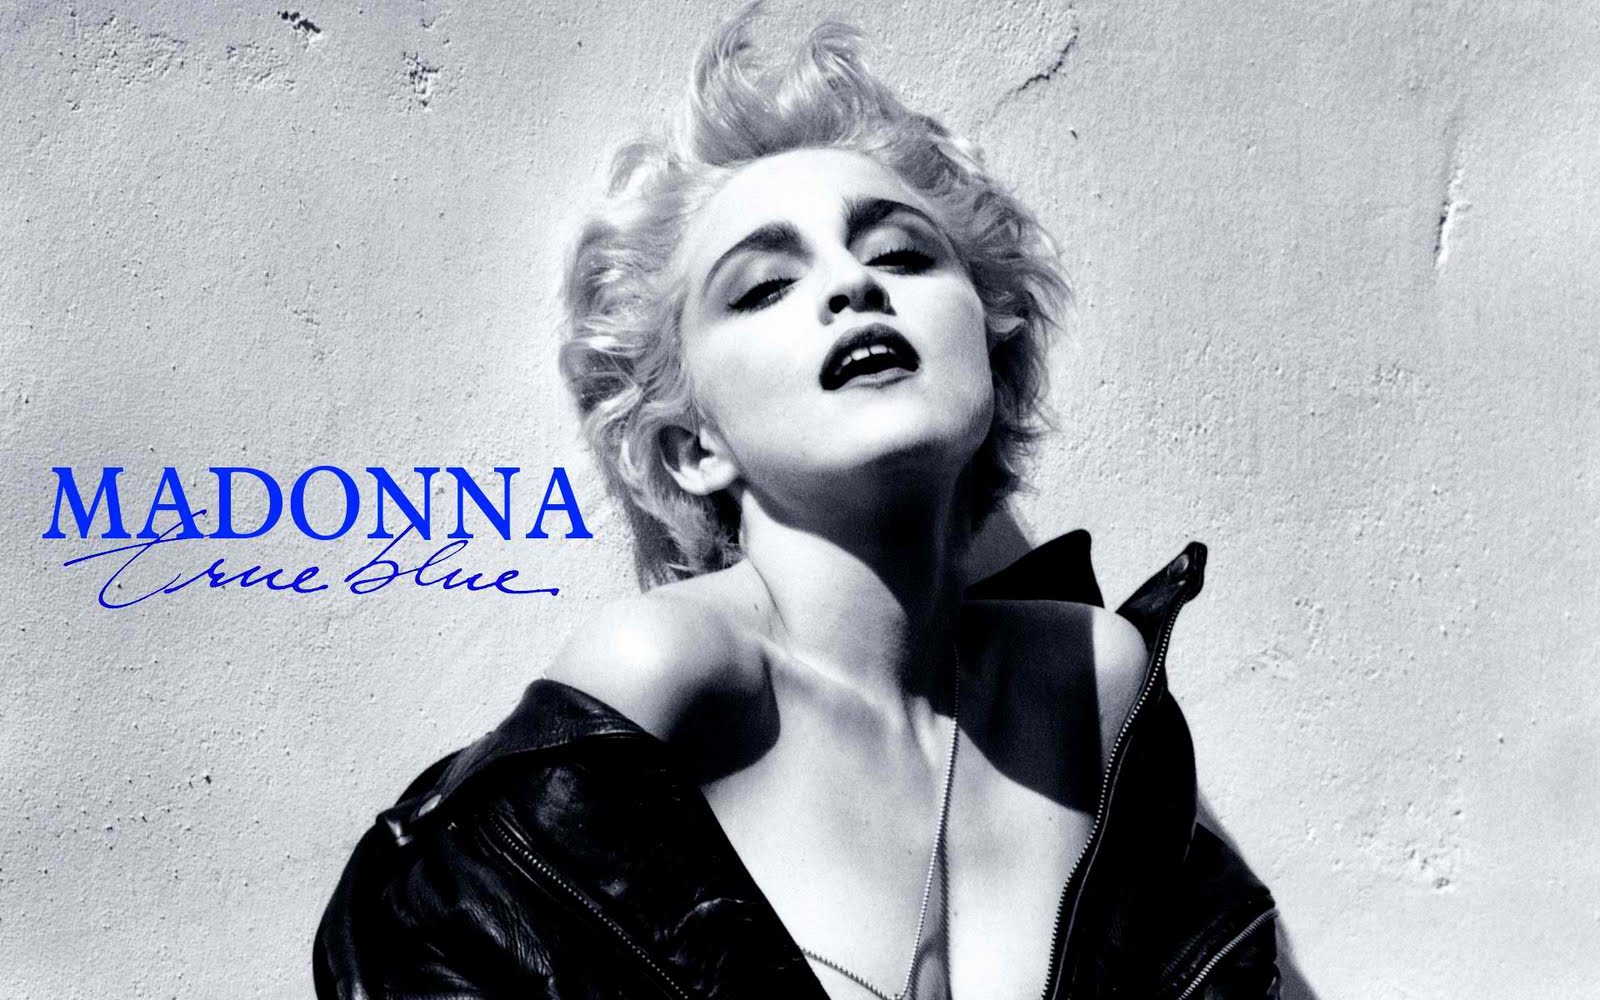 http://3.bp.blogspot.com/-tBcBcw8AEGM/Tg0ZUhHxUUI/AAAAAAAACMY/BKKadYxDIak/s1600/Madonna-TrueBlue-1920x1200-Wallpaper.jpg